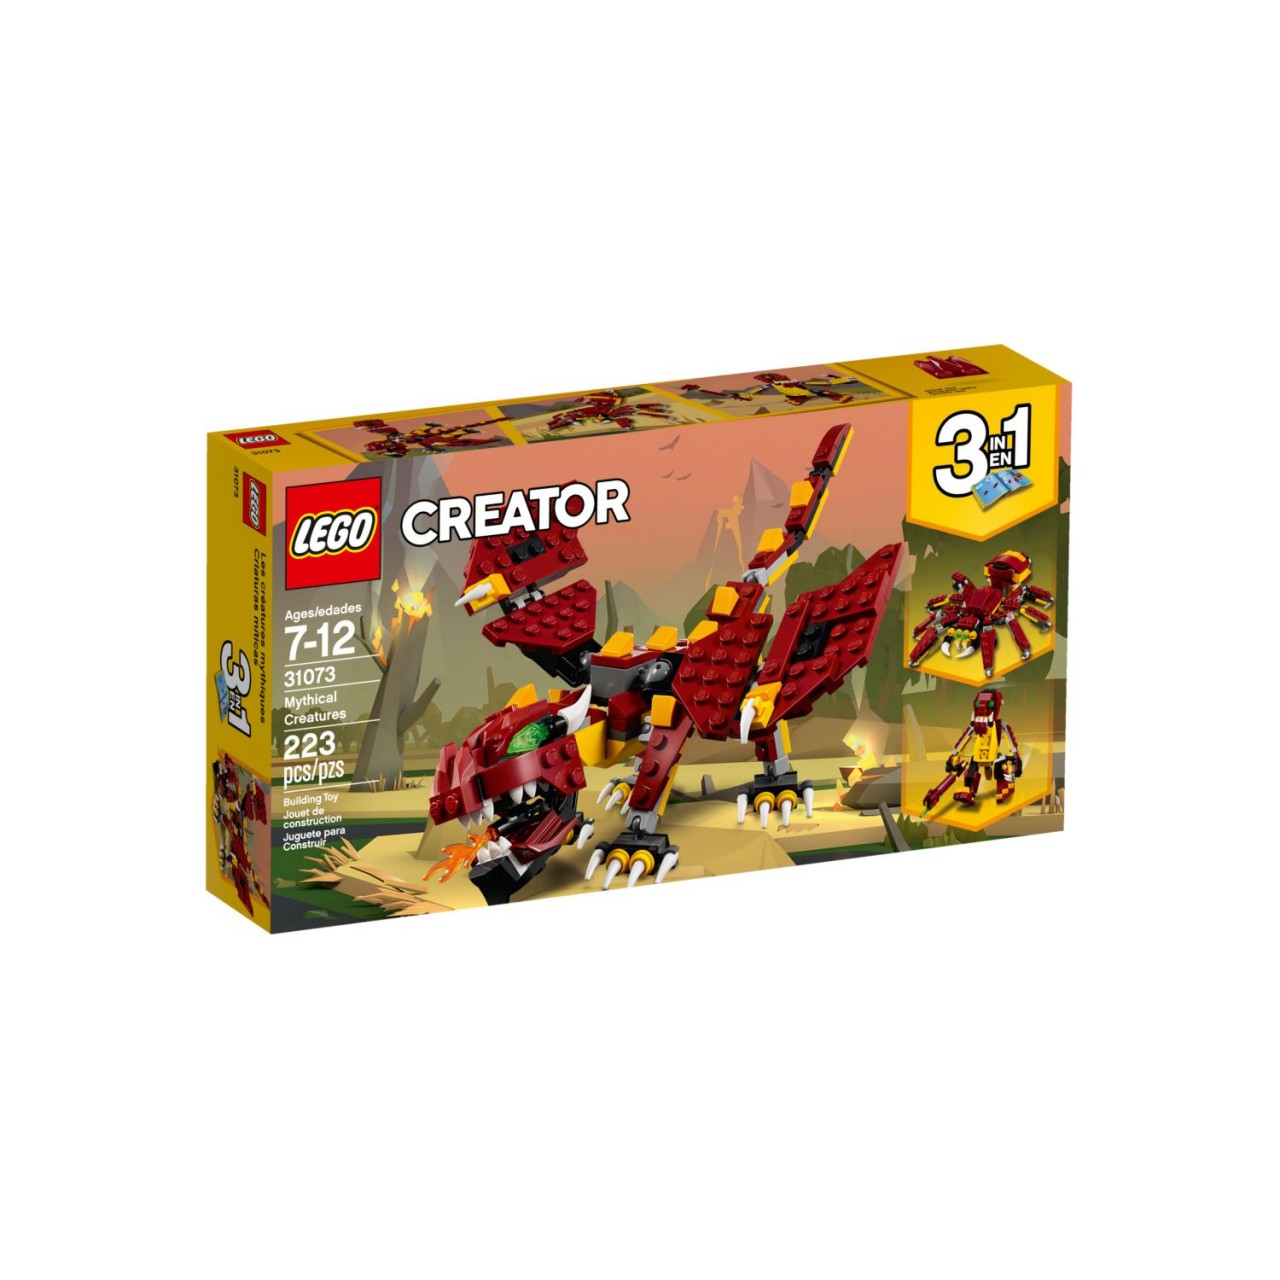 LEGO CREATOR 31073 Fabelwesen